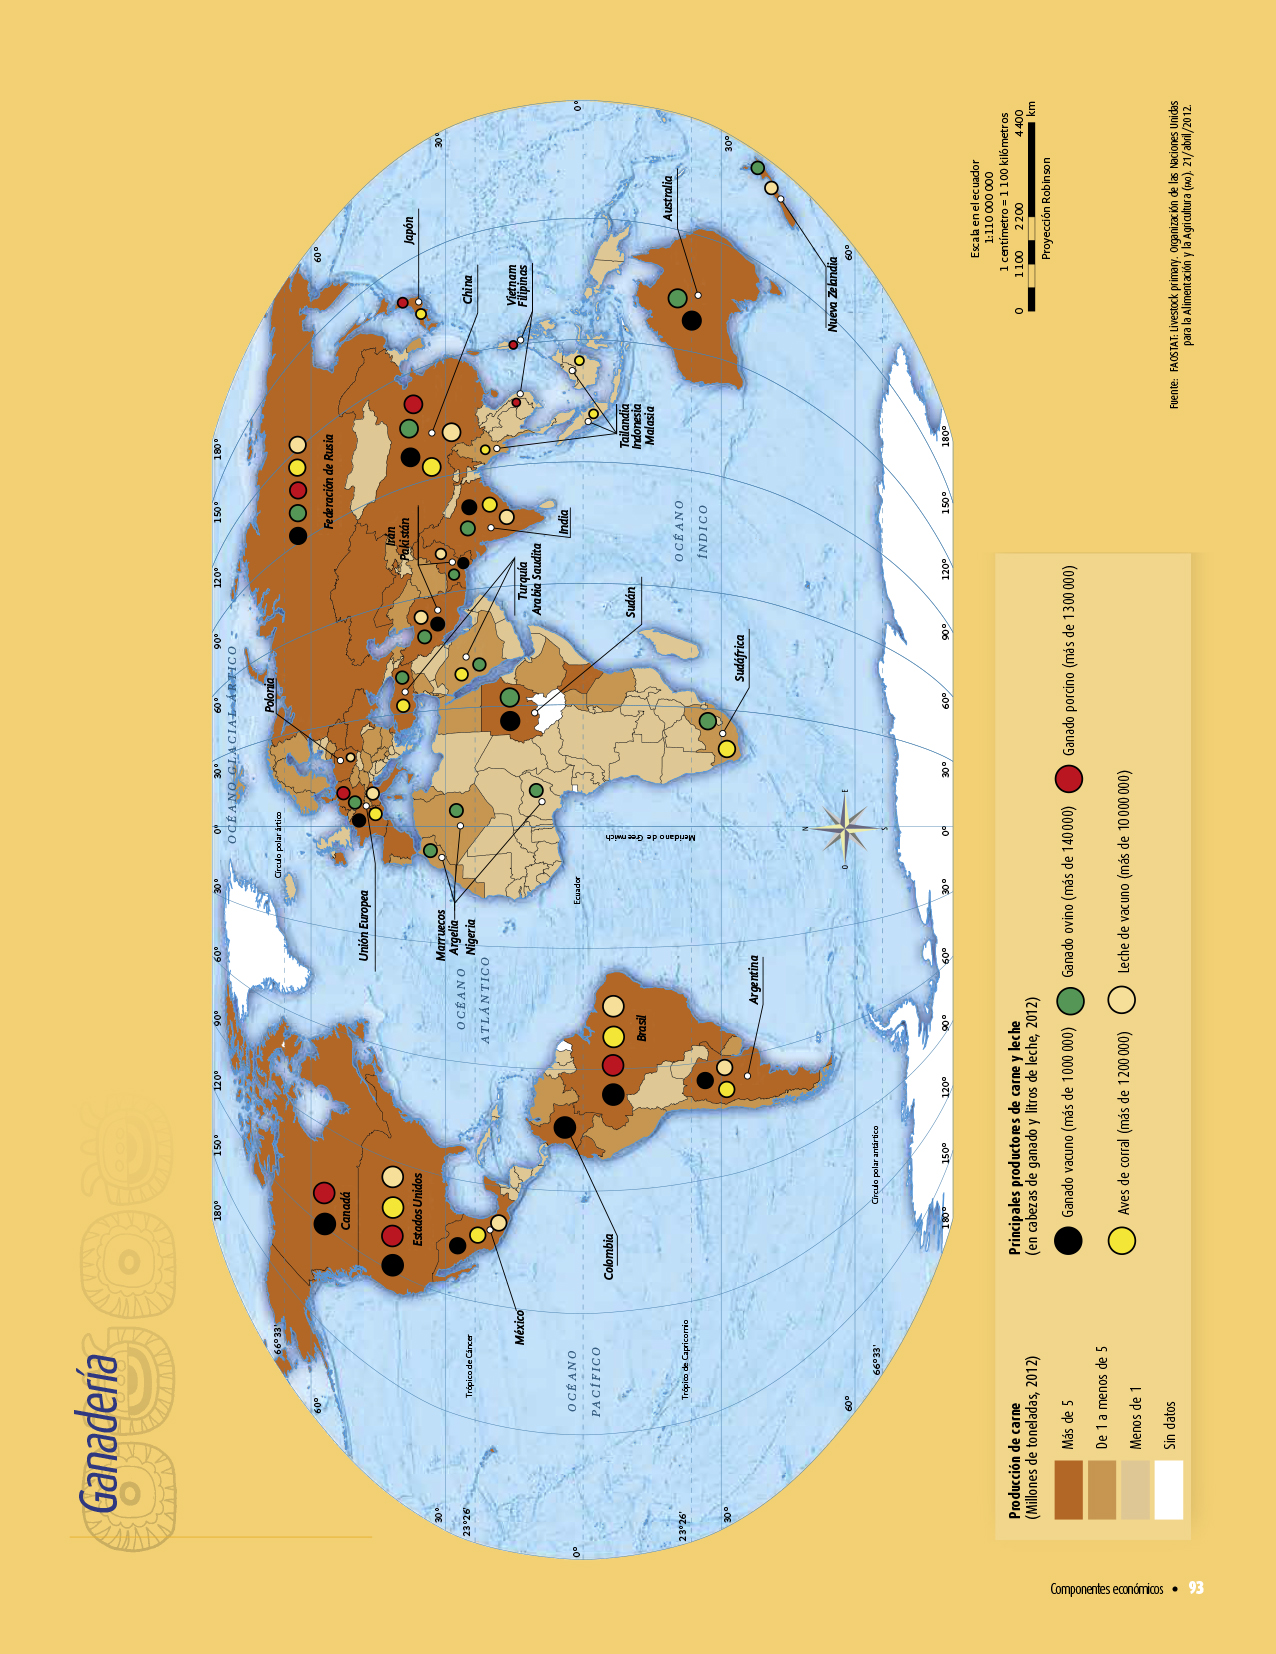 Atlas De Geografía 6 Grado - Libro De Atlas De Geografia De 6 Grado - Libro Atlas 6 ... - Atlas de geografía del mundo 6 grado 2019 a 2020 pdf.